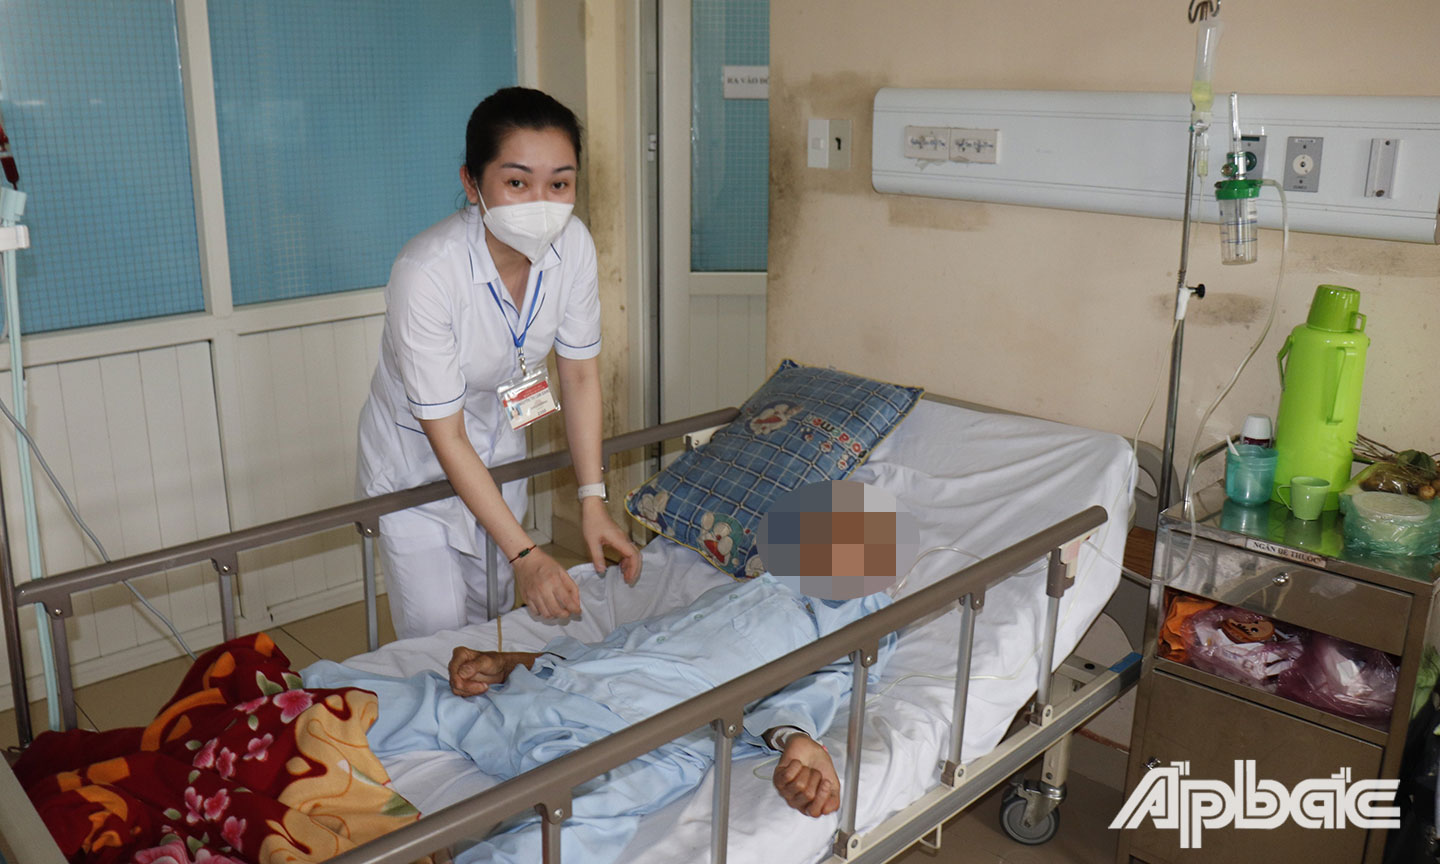 Bệnh nhân Trần Văn N. sau 1 ngày mổ tỉnh, tiếp xúc tốt, đang trong quá trình hồi phục sau mổ